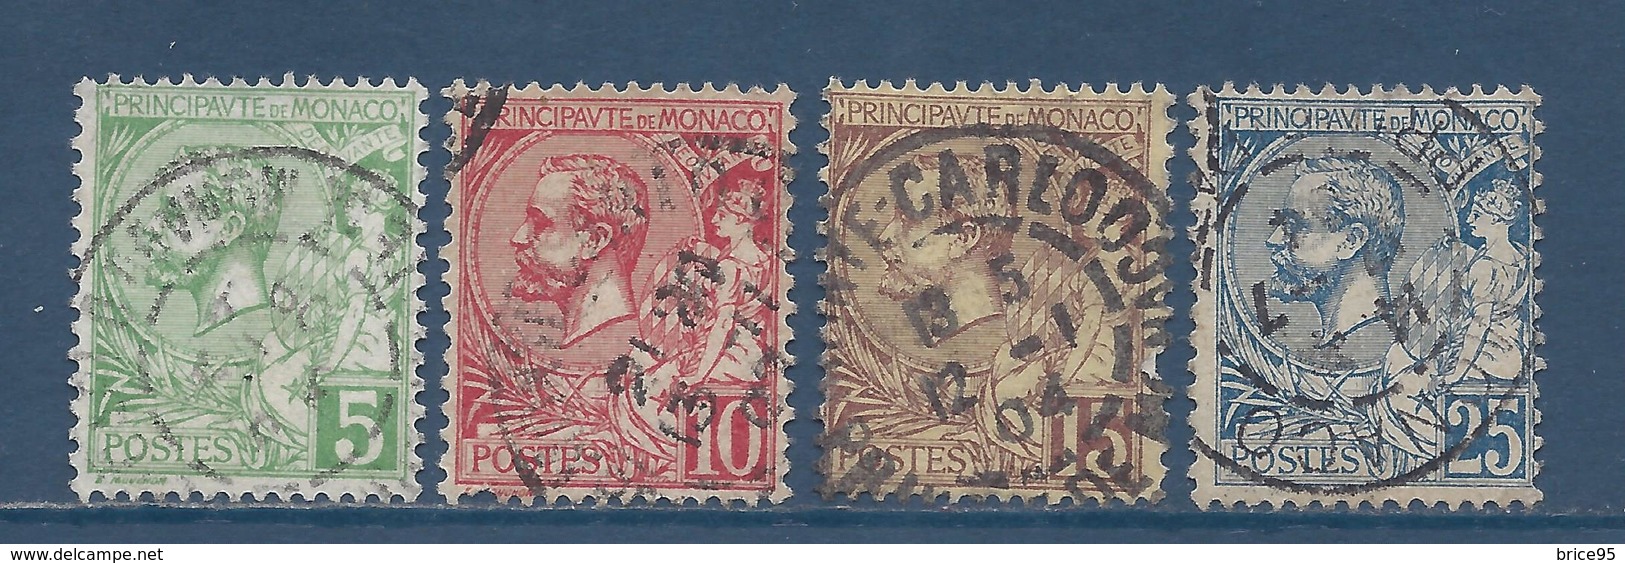 ⭐ Monaco - YT N° 22 à 25 - Oblitéré - 1901 ⭐ - Used Stamps